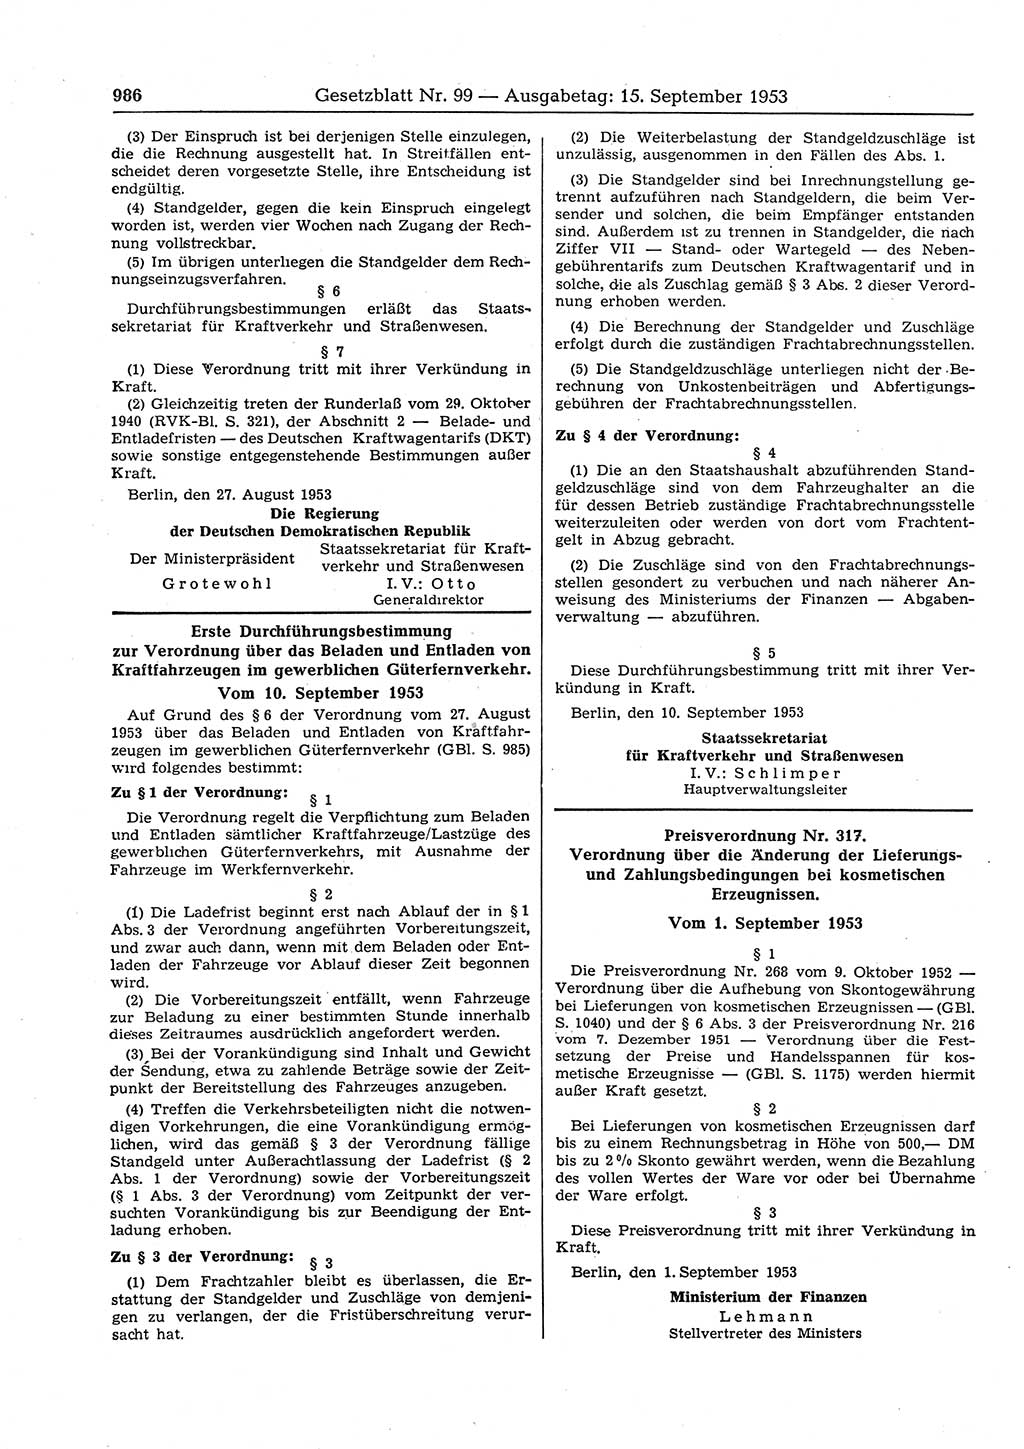 Gesetzblatt (GBl.) der Deutschen Demokratischen Republik (DDR) 1953, Seite 986 (GBl. DDR 1953, S. 986)